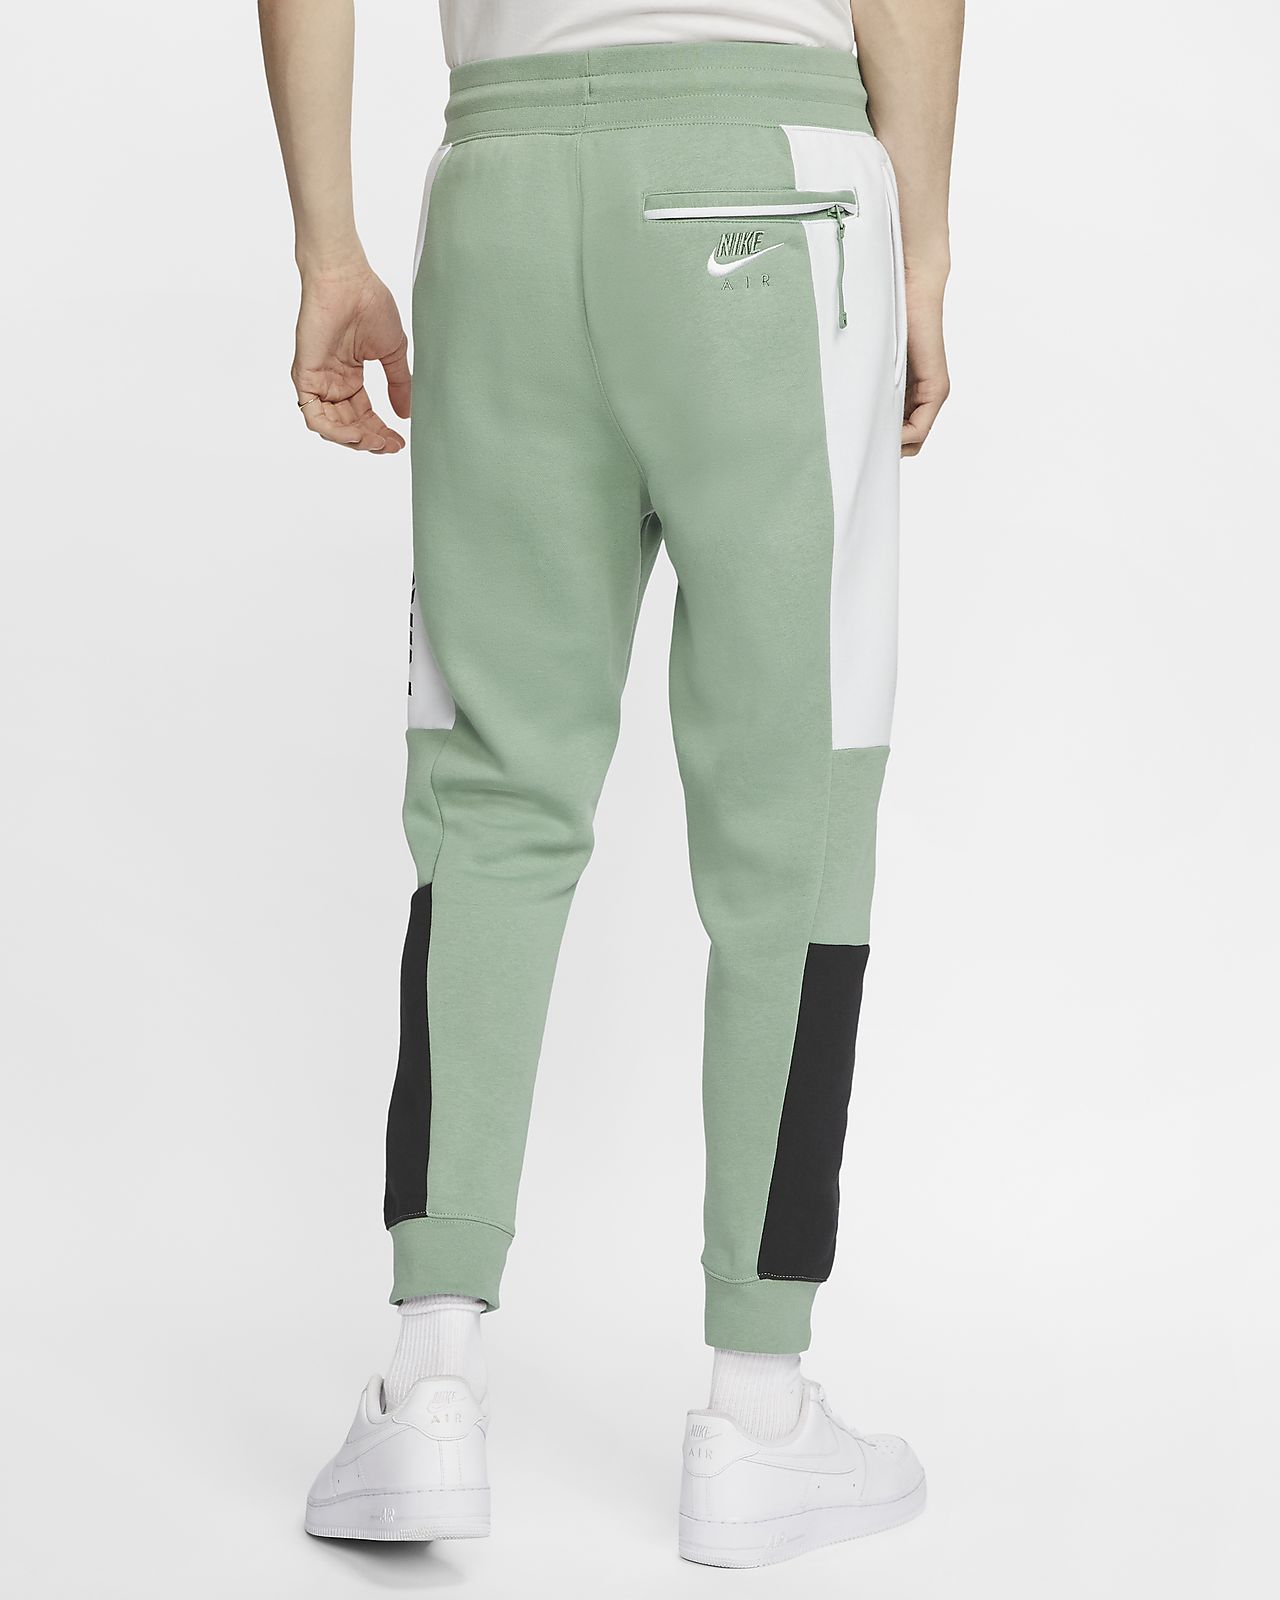 green nike fleece pants